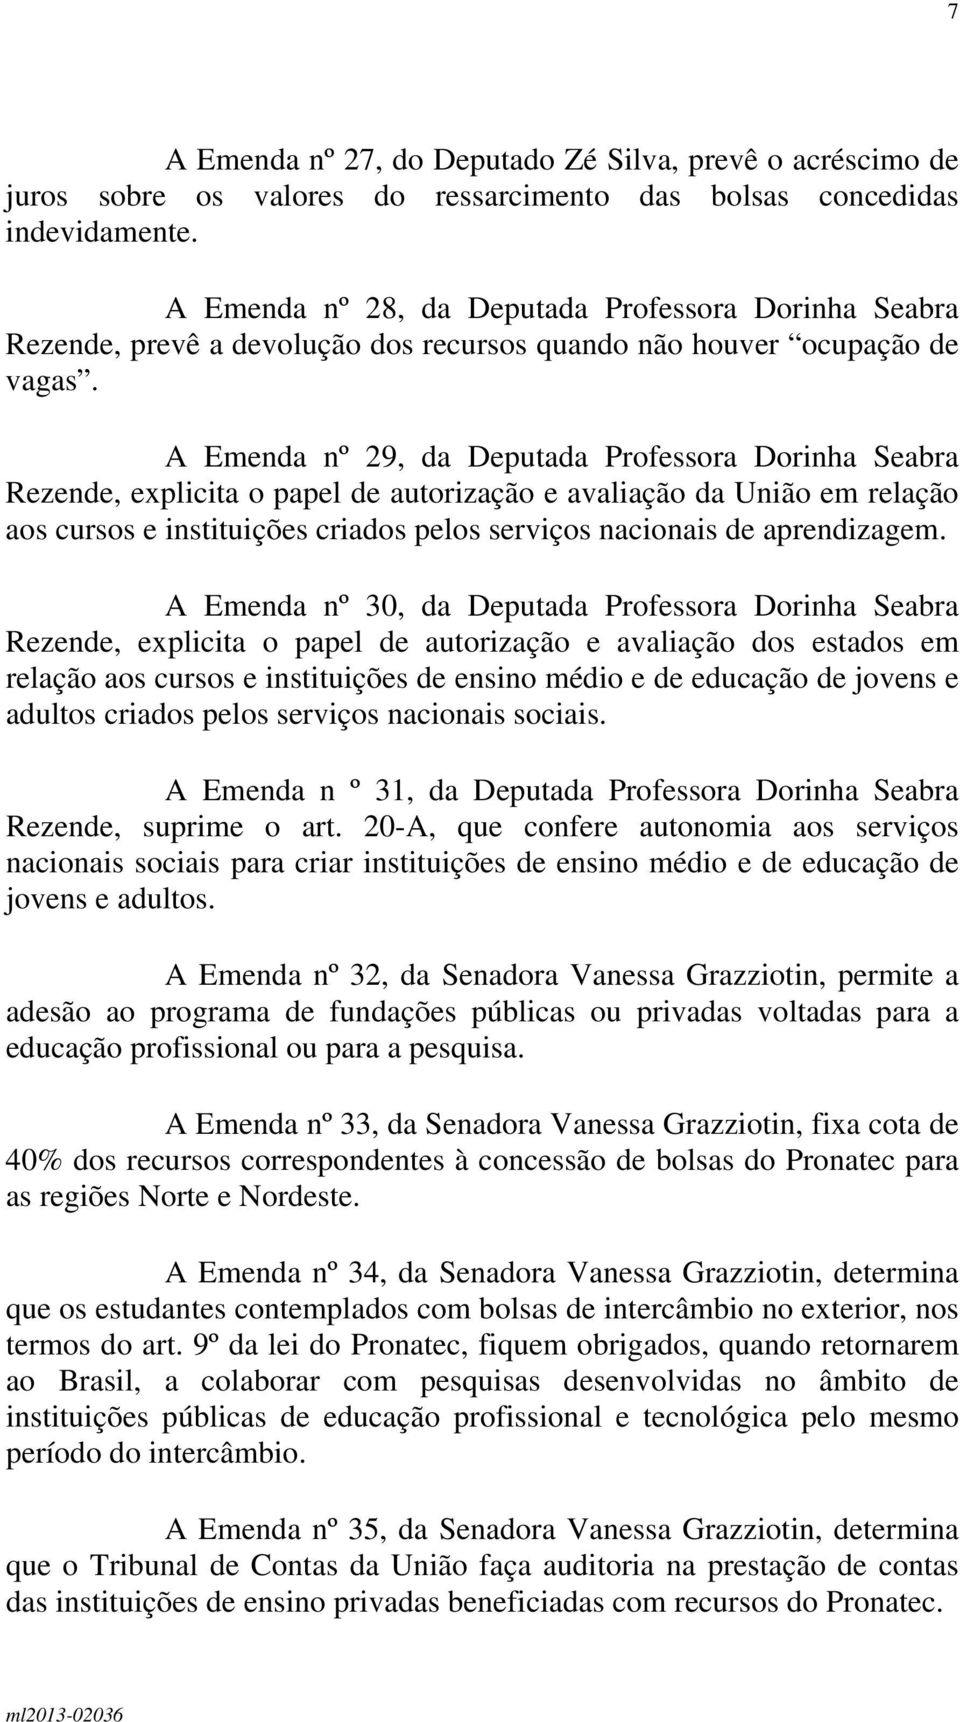 A Emenda nº 29, da Deputada Professora Dorinha Seabra Rezende, explicita o papel de autorização e avaliação da União em relação aos cursos e instituições criados pelos serviços nacionais de